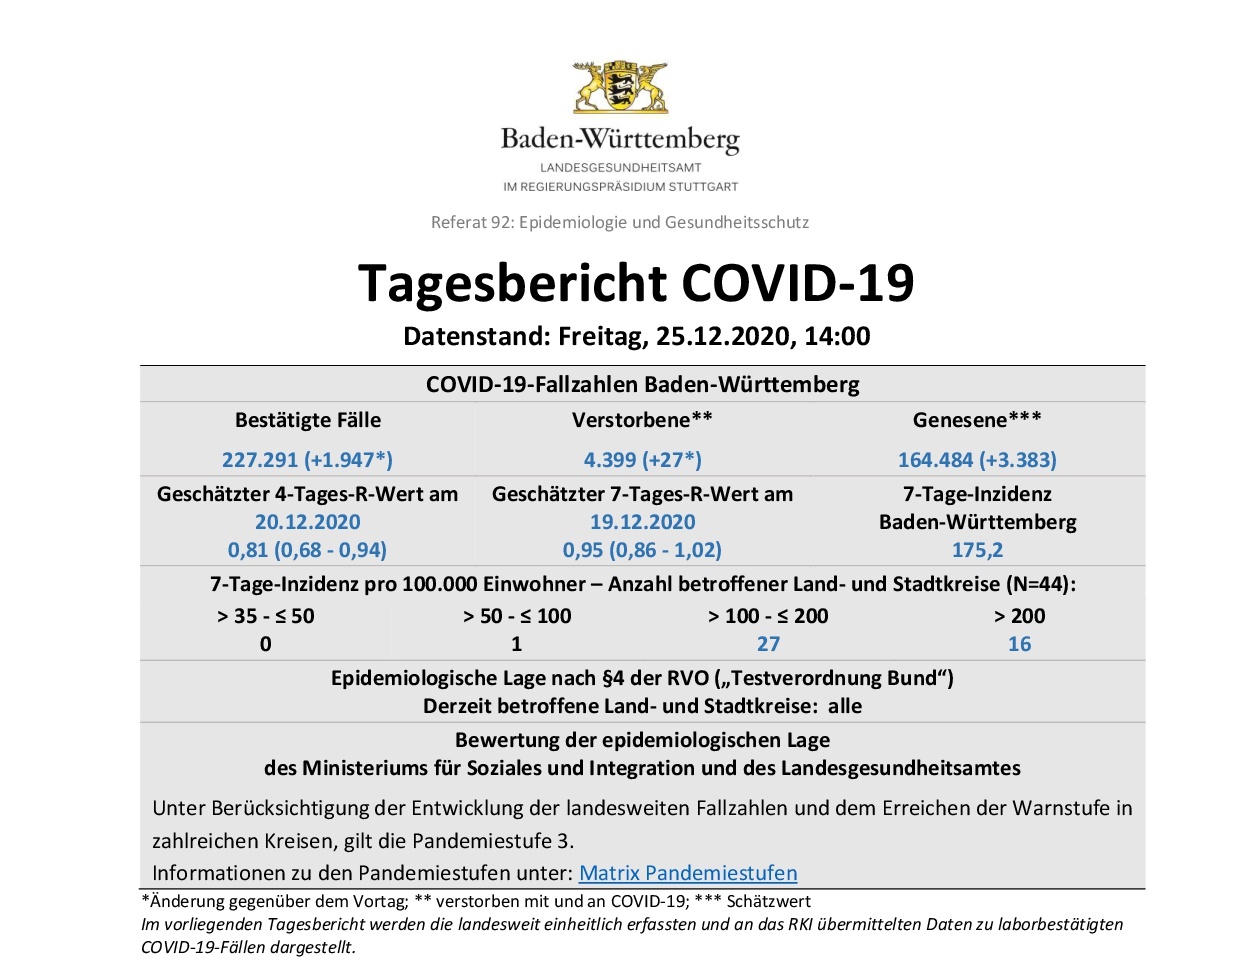 COVID-19 Tagesbericht (25.12.2020) des Landesgesundheitsamts Baden-Württemberg – (ausführlich)